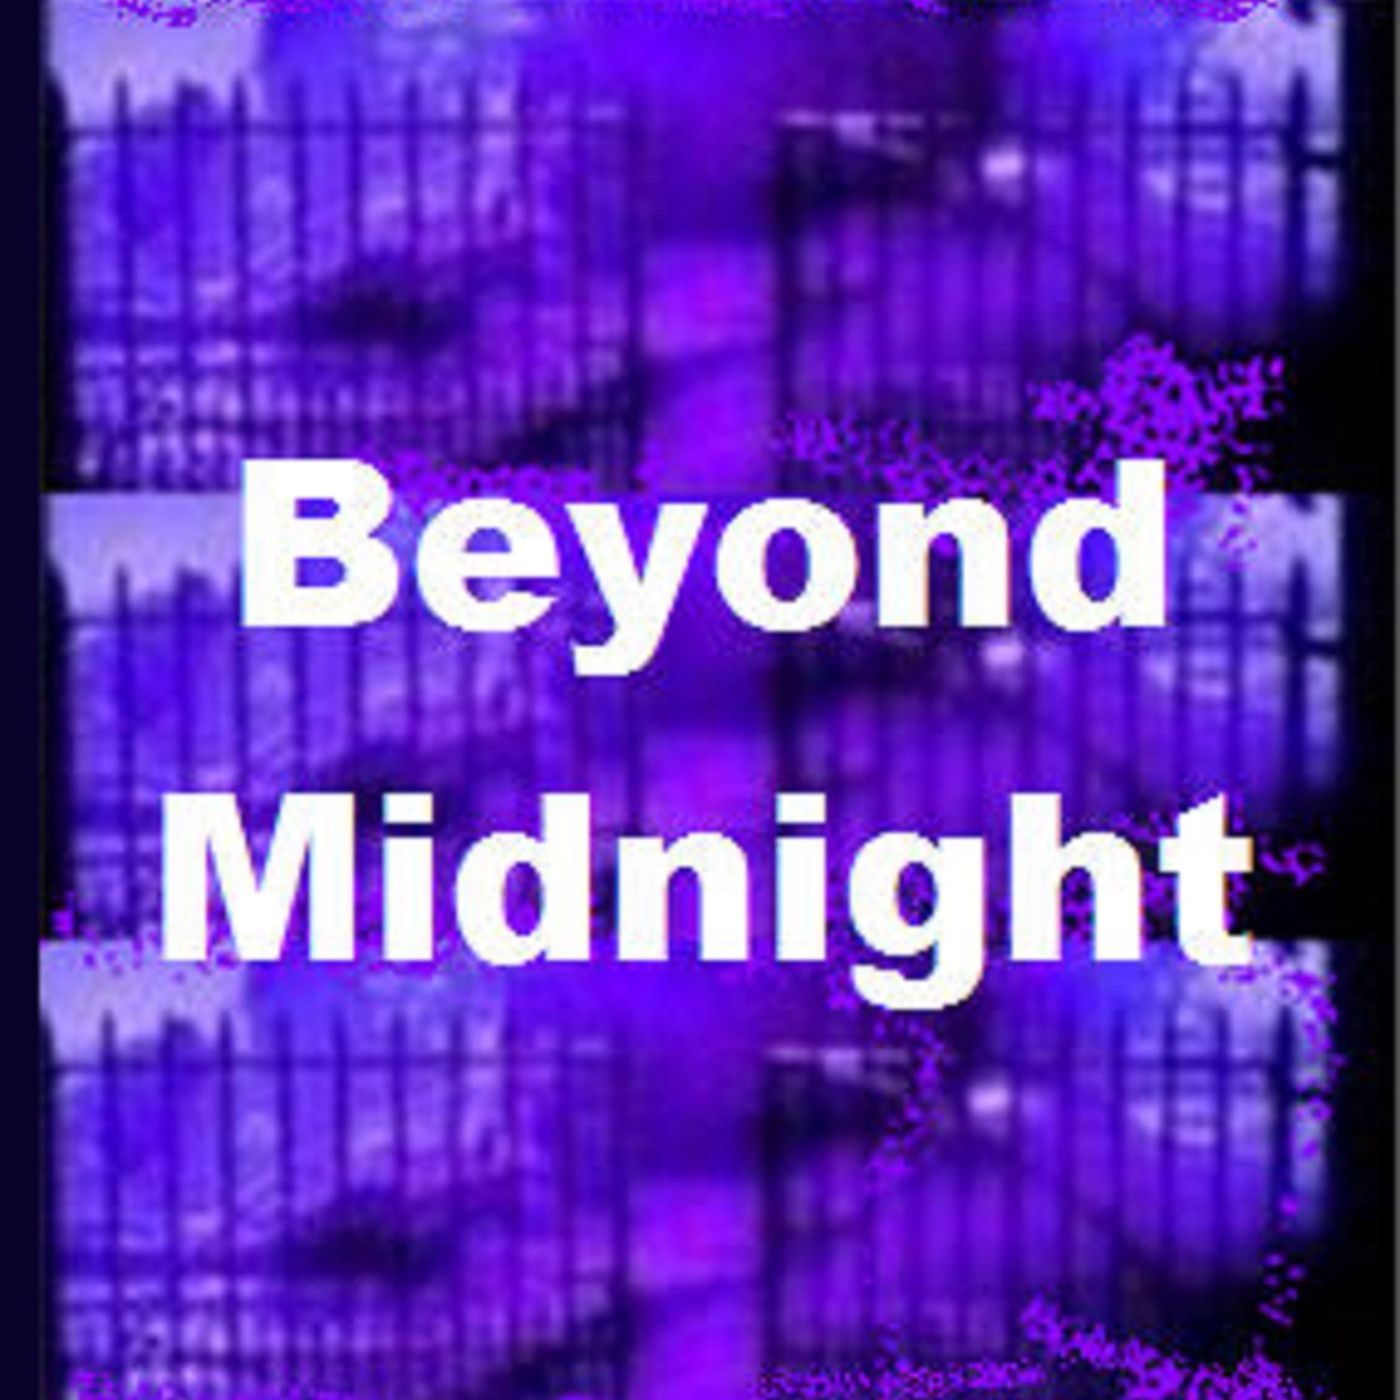 Beyond Midnight xx-xx-xx (xx) The Sheriffs Wife